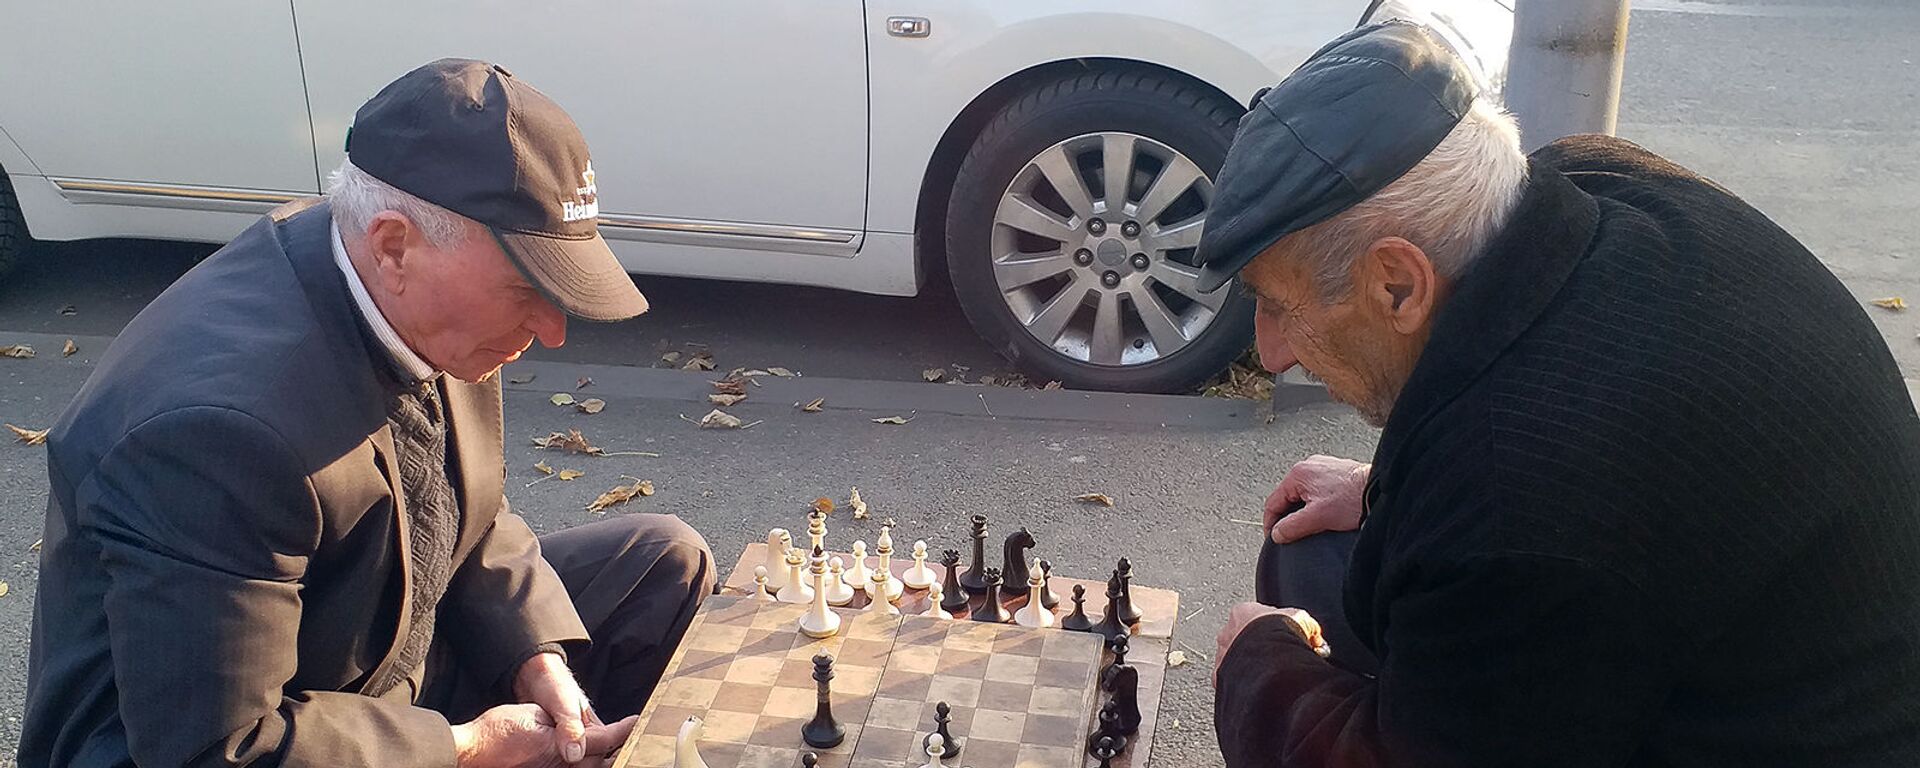 Пожилые люди играют в шахматы на одной из улиц Еревана - Sputnik Արմենիա, 1920, 10.06.2021